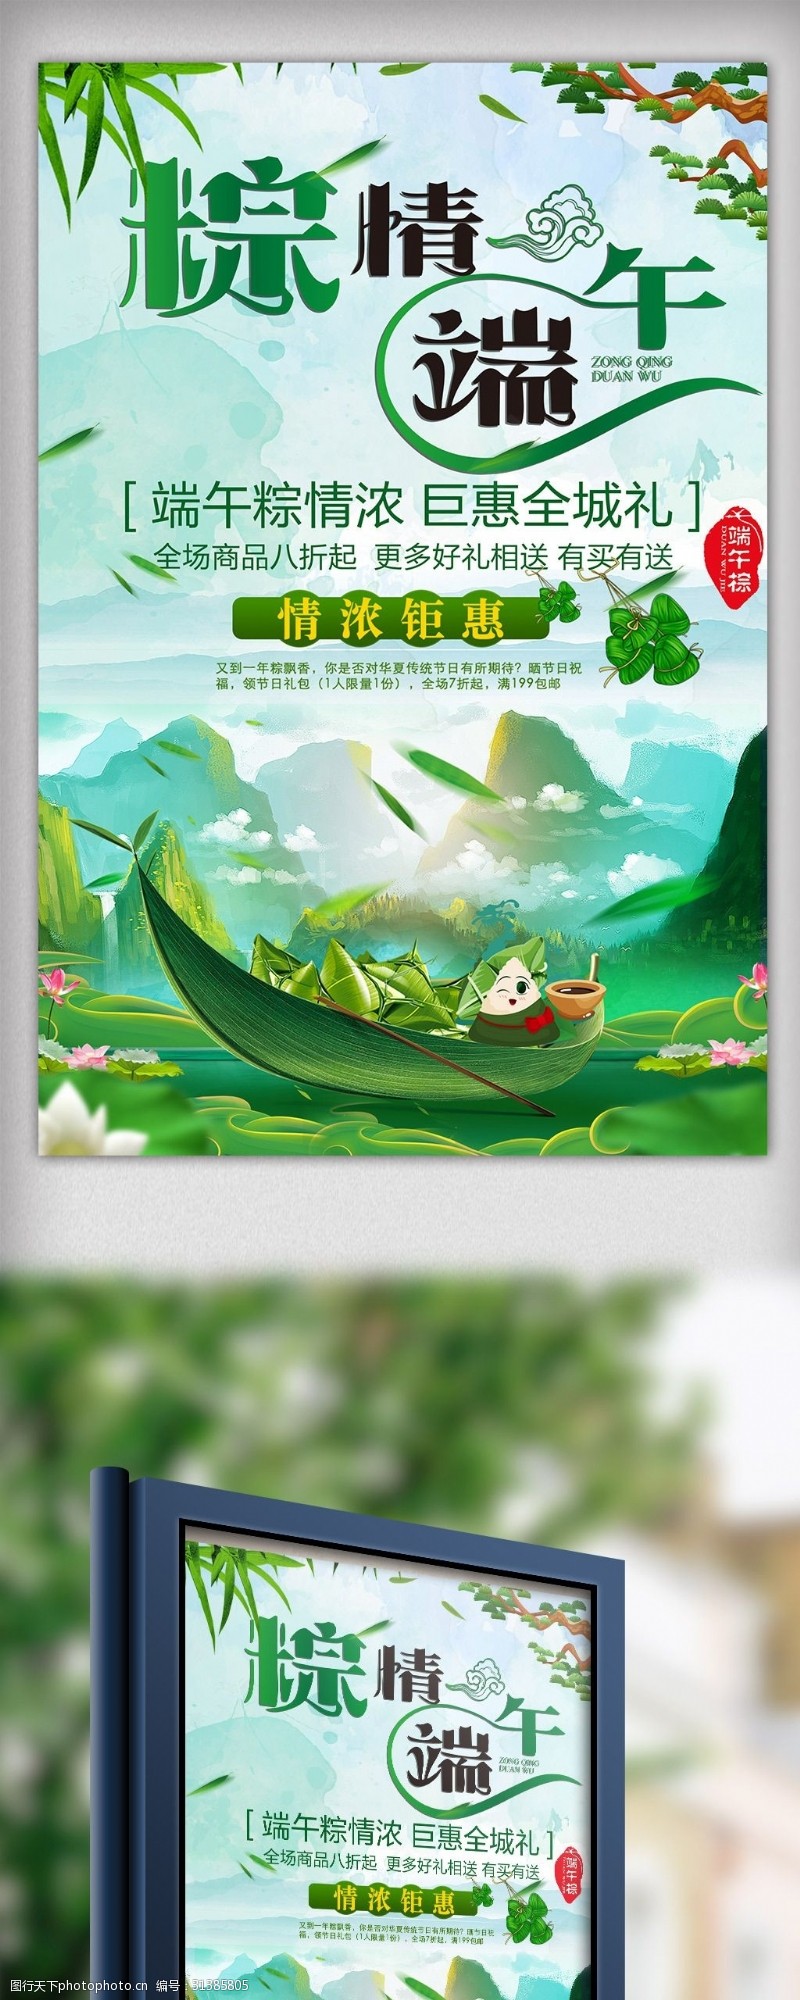 端午节易拉宝中国传统节日端午节海报展板设计